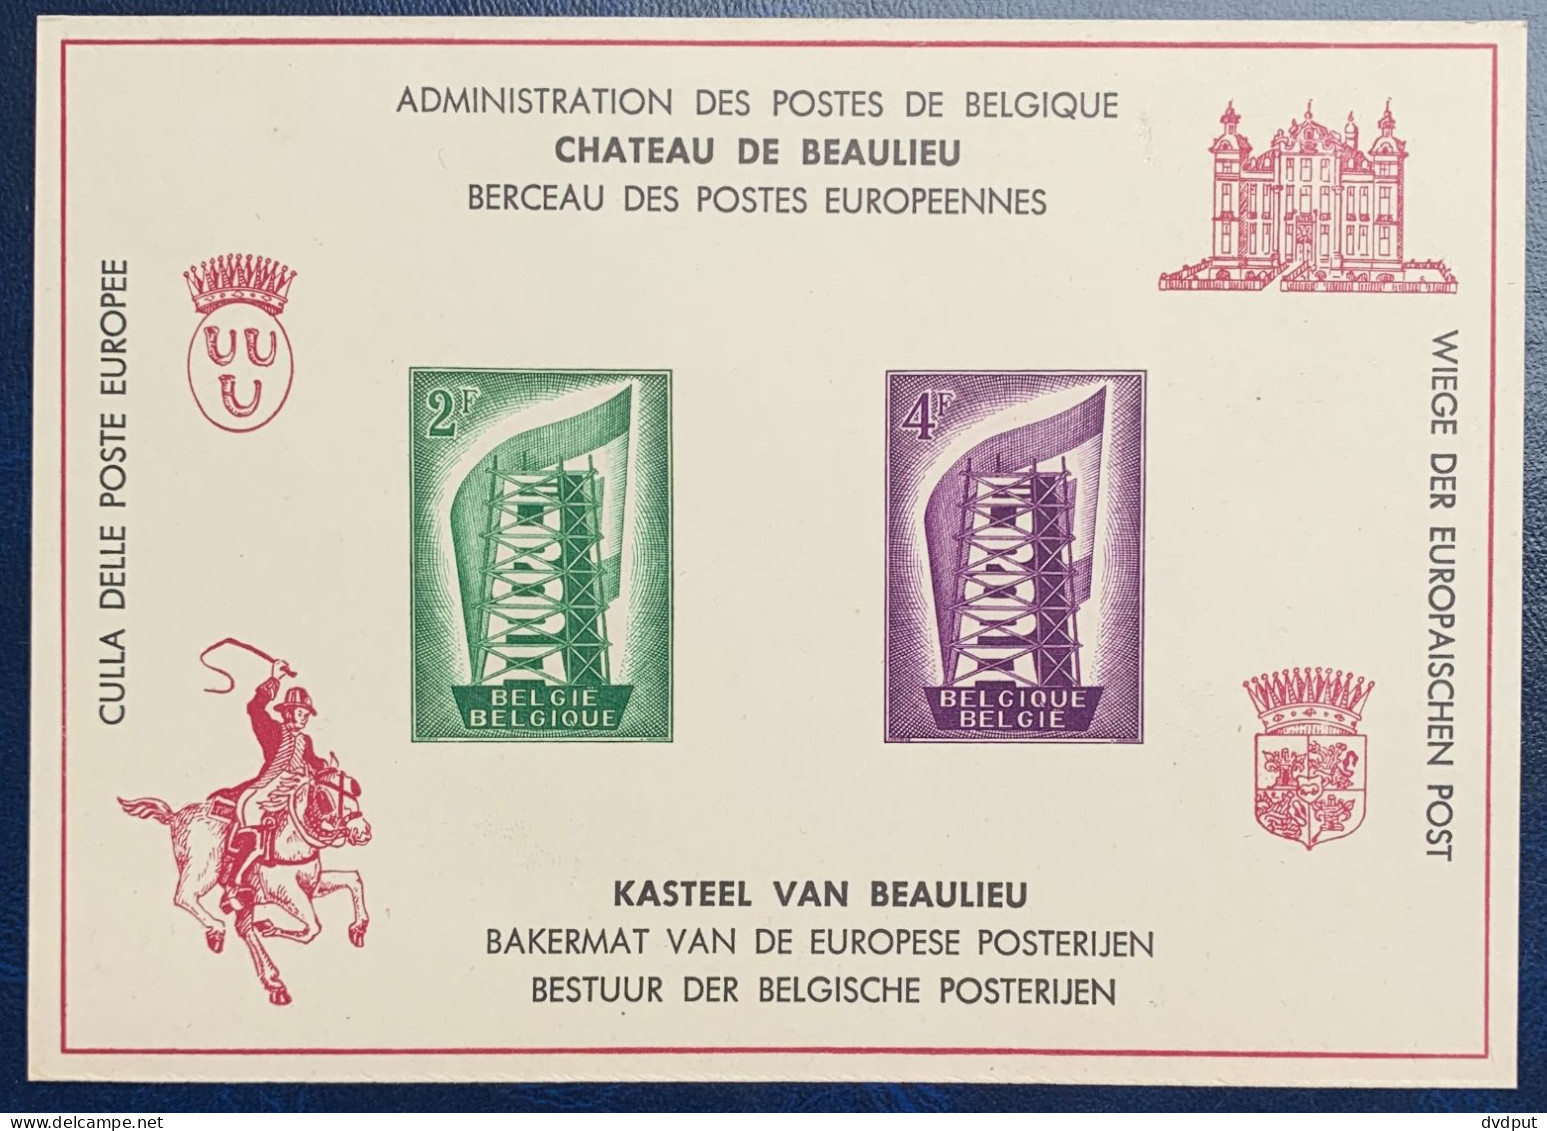 België, 1956, LX21, Postfris **, OBP 37€ - Luxevelletjes [LX]